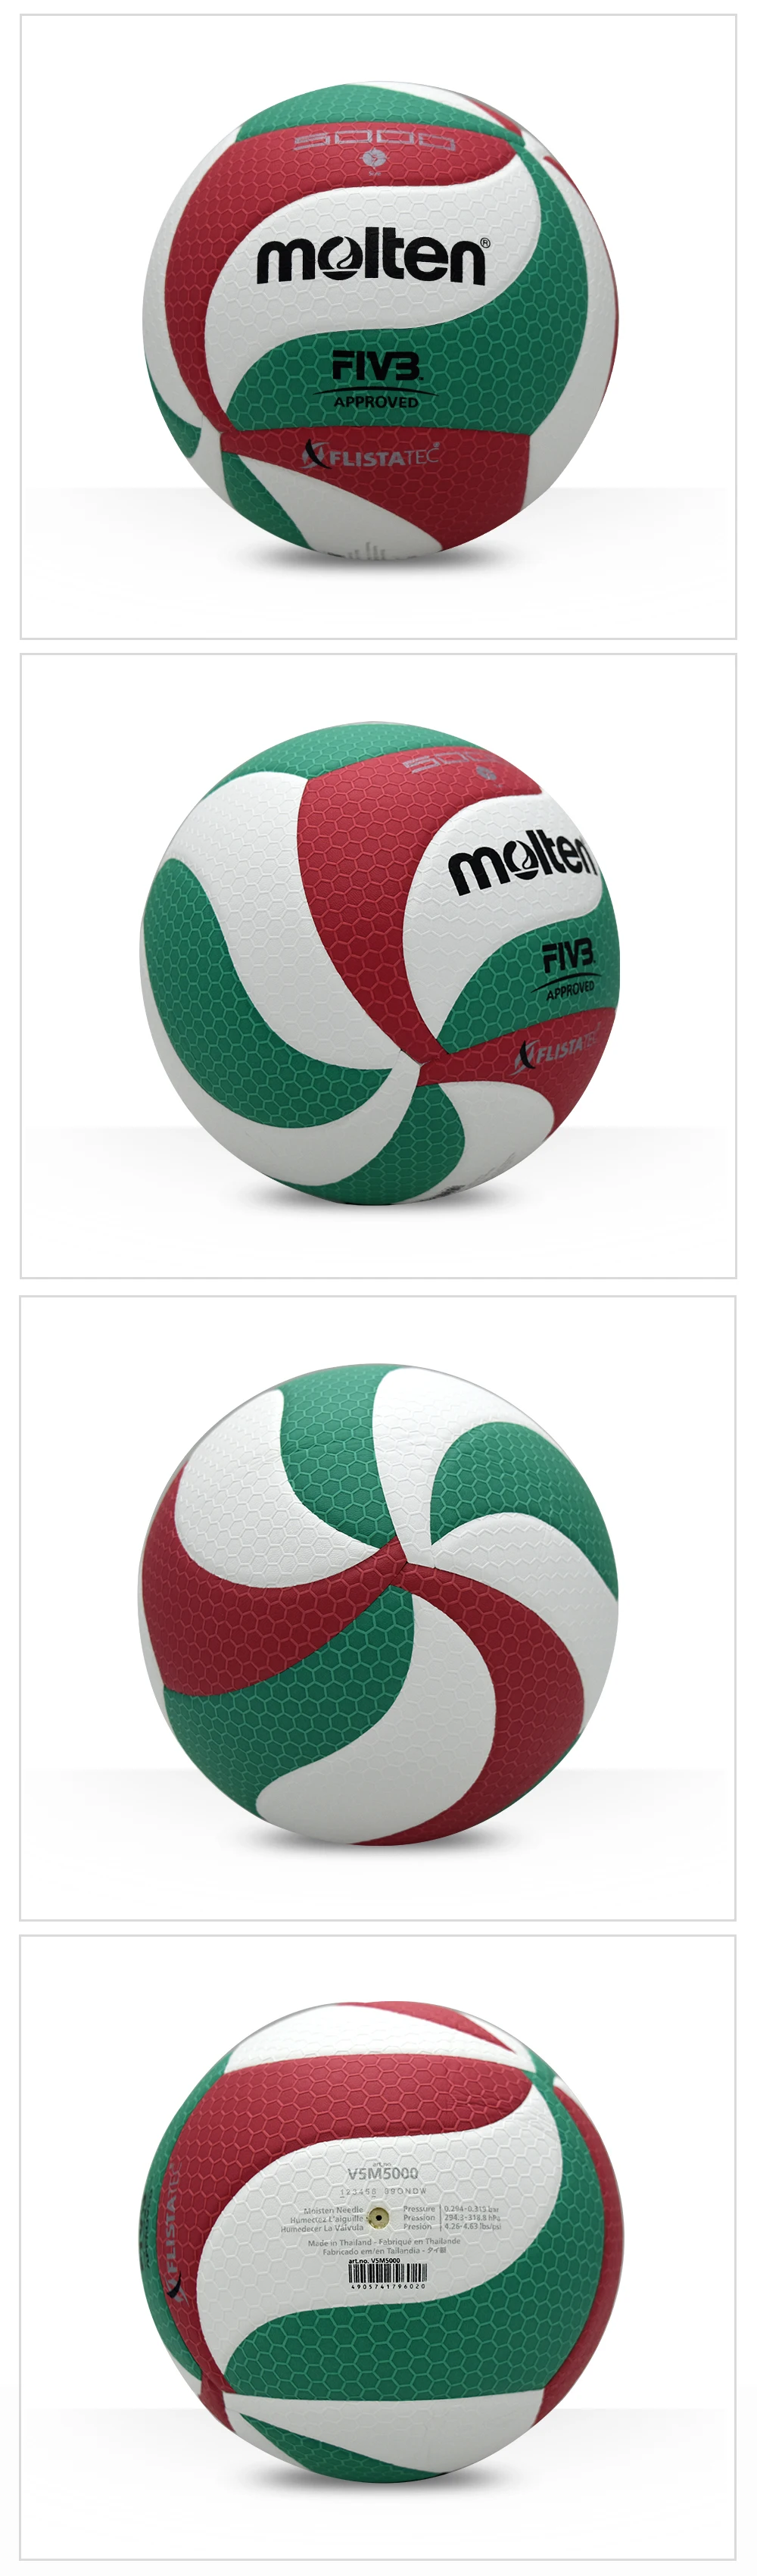 Расплавленный Волейбол V5M5000 бренд высокого качества из натуральной расплавленной искусственной кожи официальный размер 5 волейбол